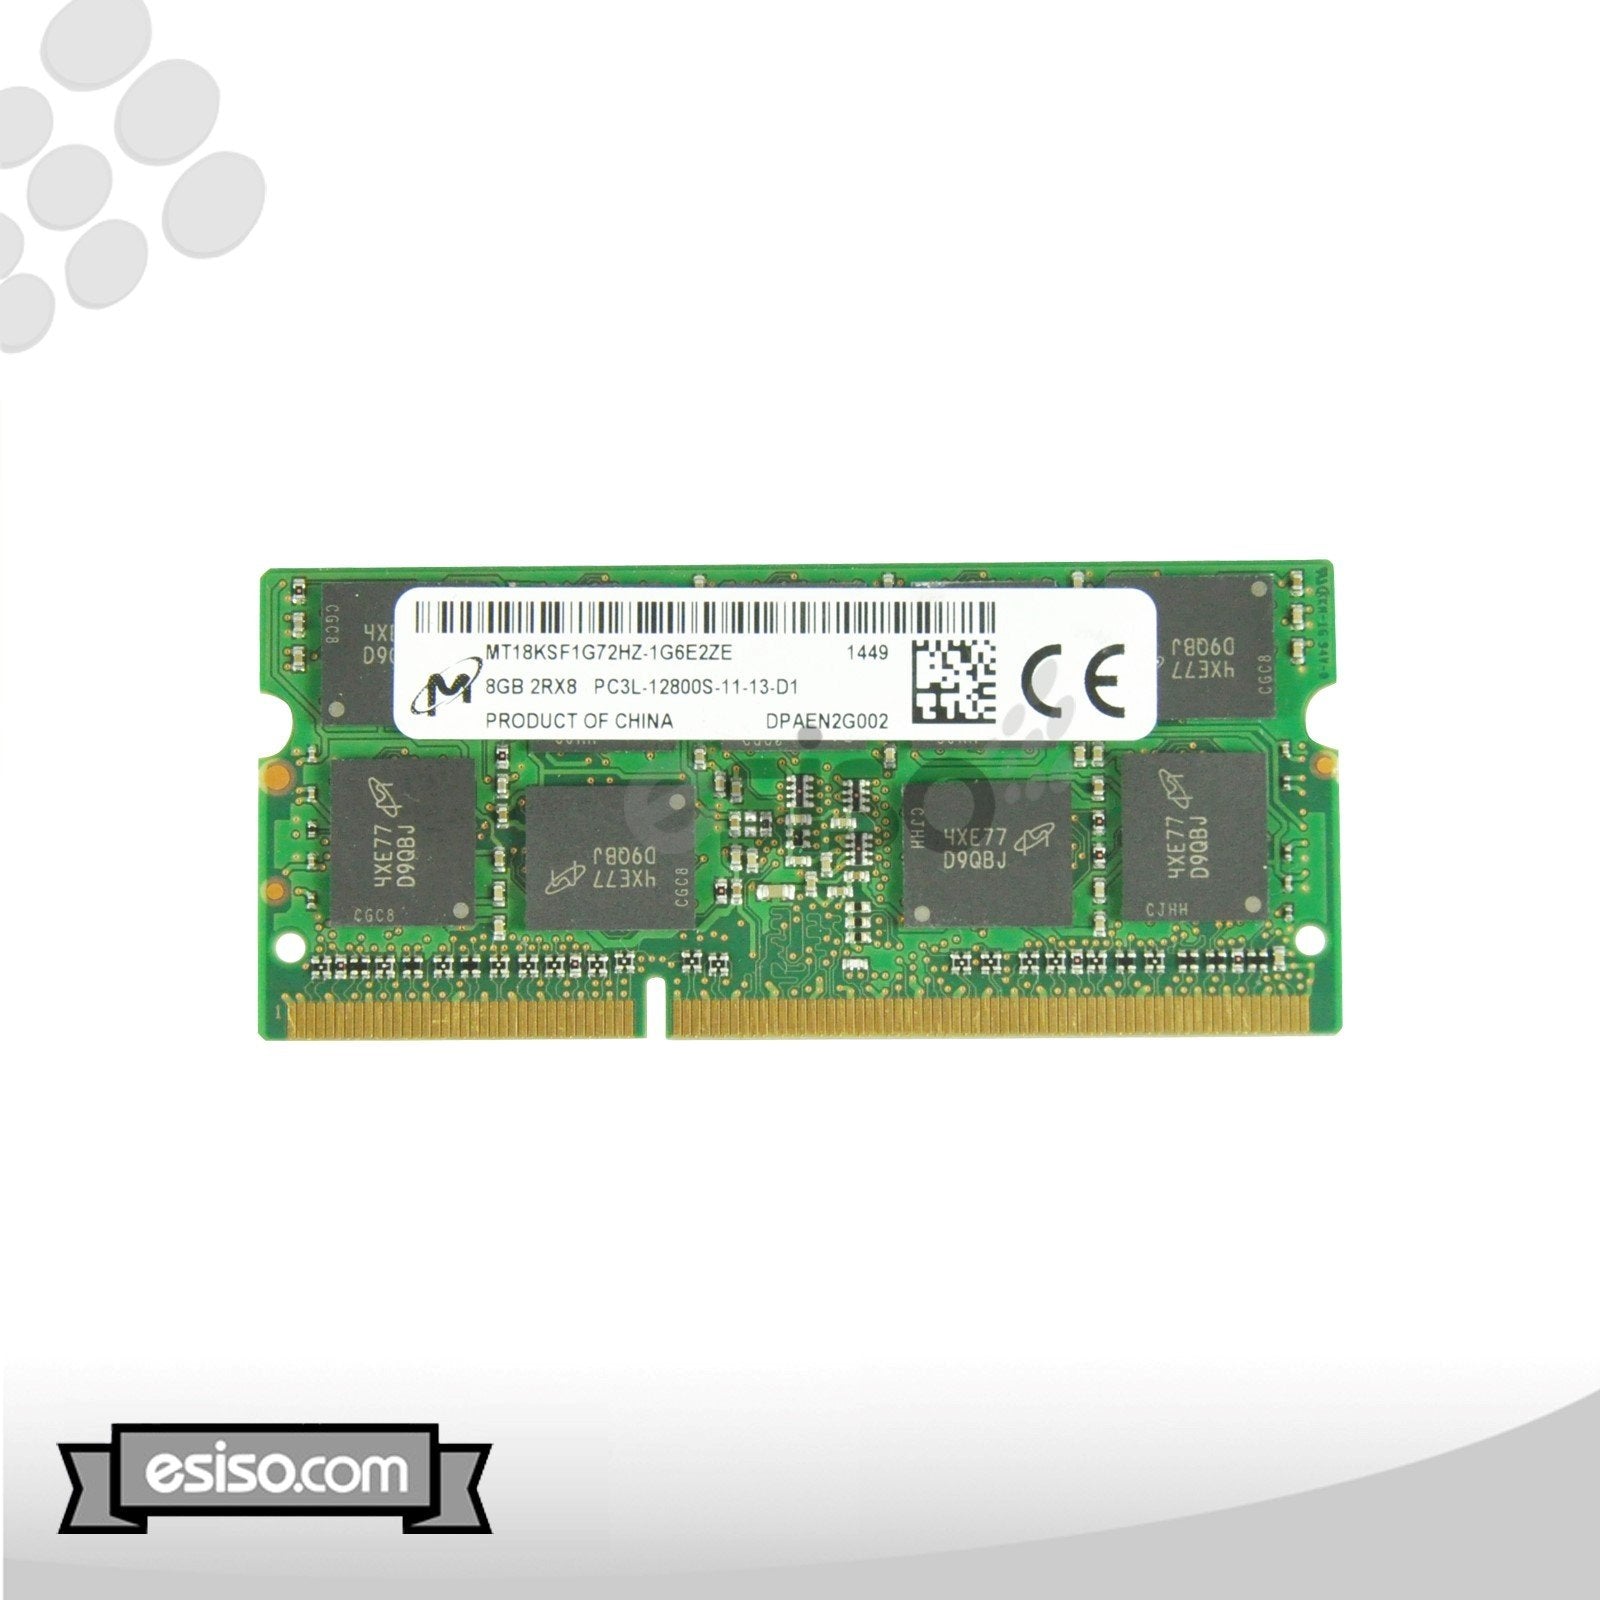 MT18KSF1G72HZ-1G6 MICRON 8GB 2RX8 PC3L-12800S DDR3 1.35V SODIMM MEMORY (1x8GB)